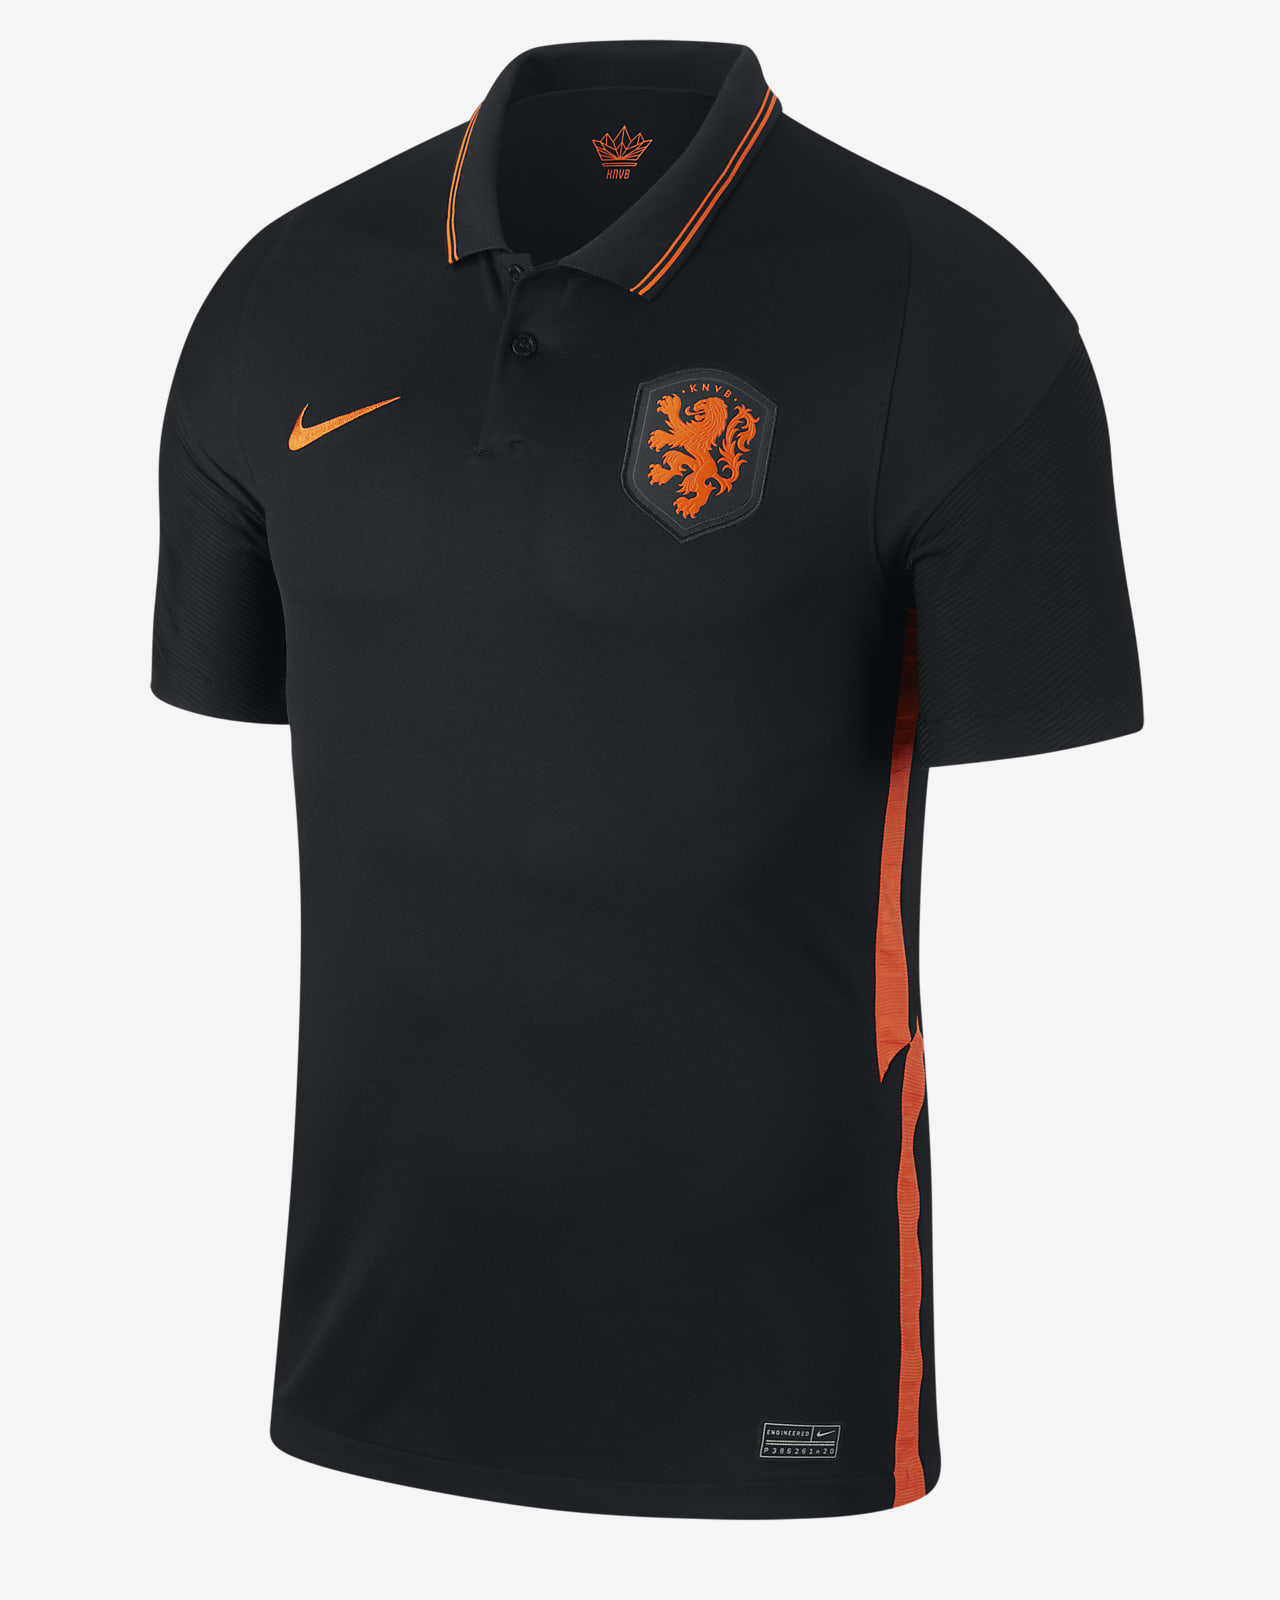 Netherlands 2020 Away Men's Football Shirt. AU